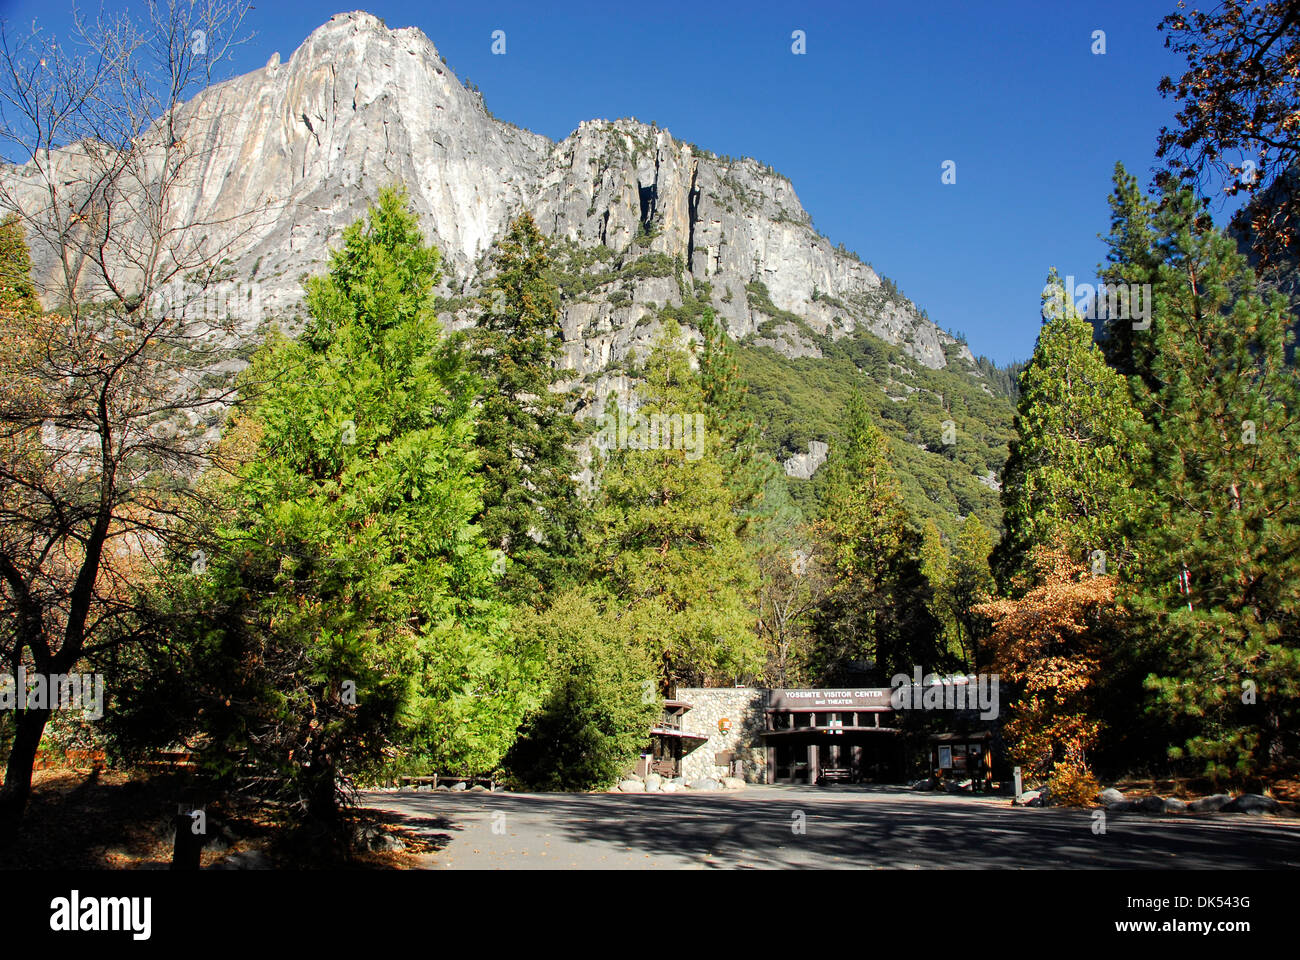 Centre d'accueil de Yosemite sous les falaises de granit à Yosemite National Park en Californie Banque D'Images